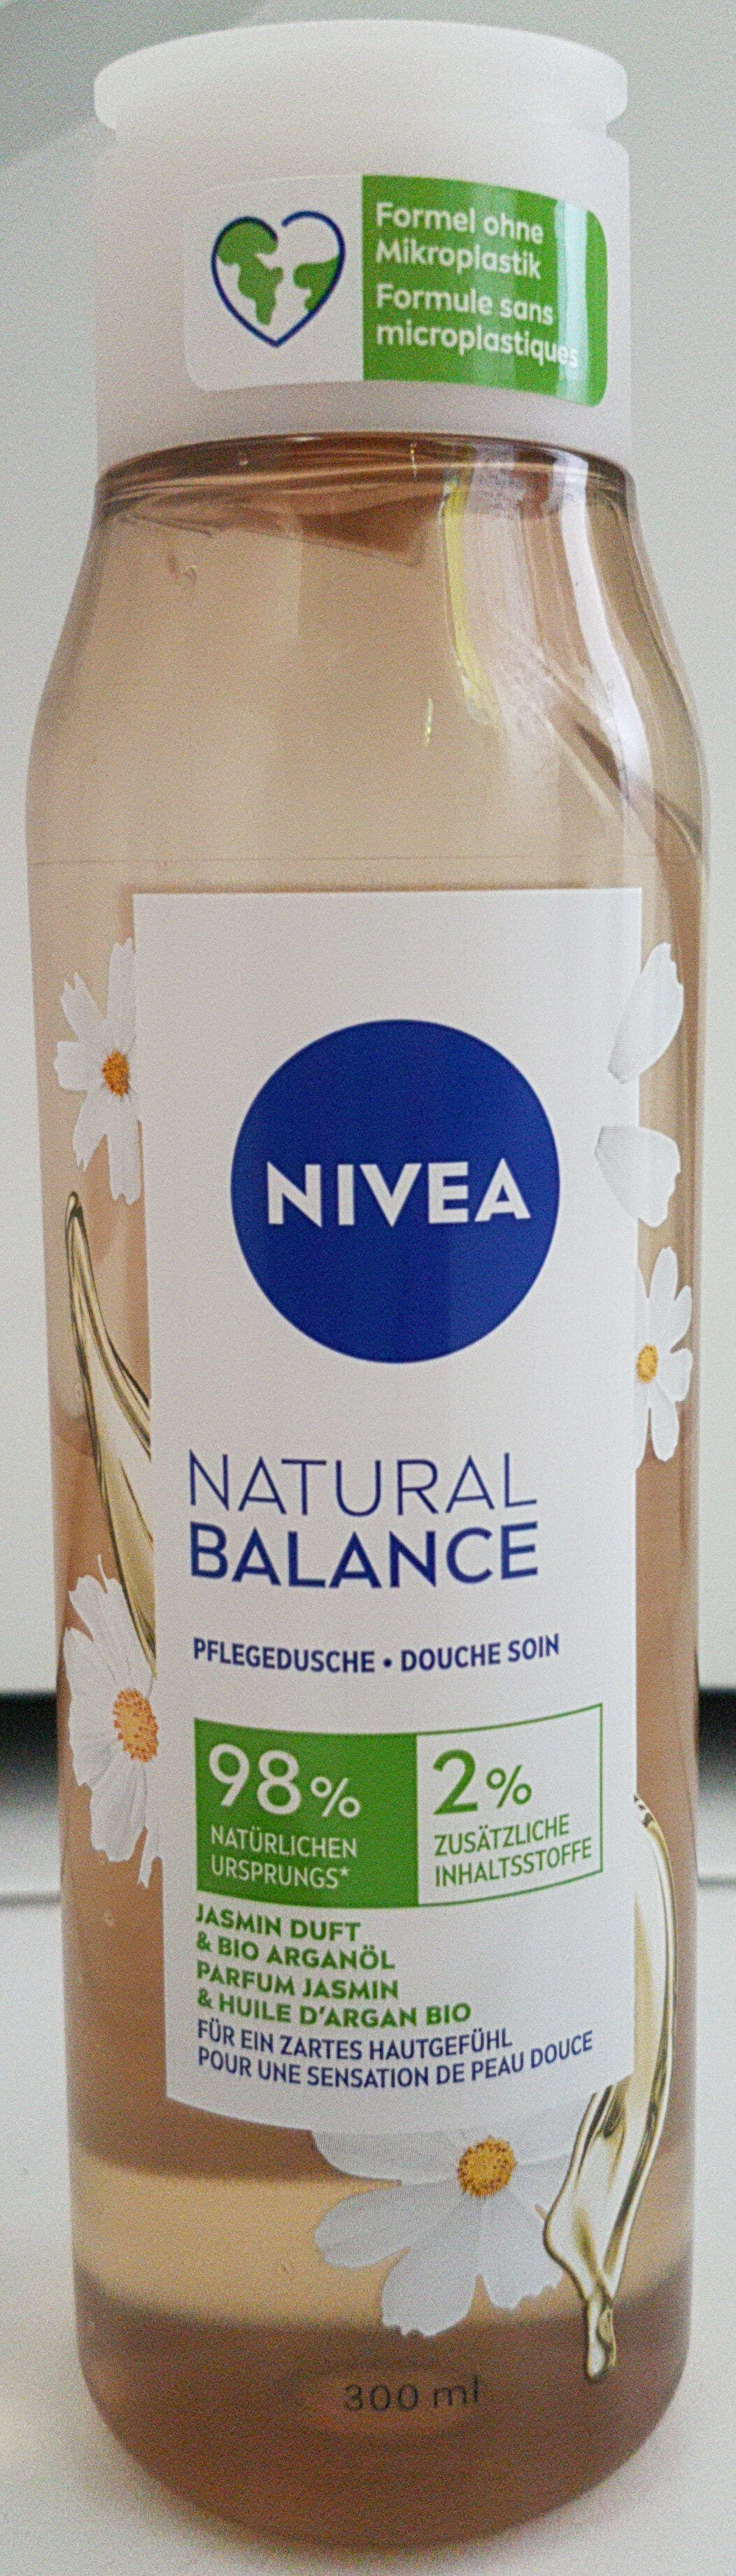 Natural Balance douche soin - Produkt - en